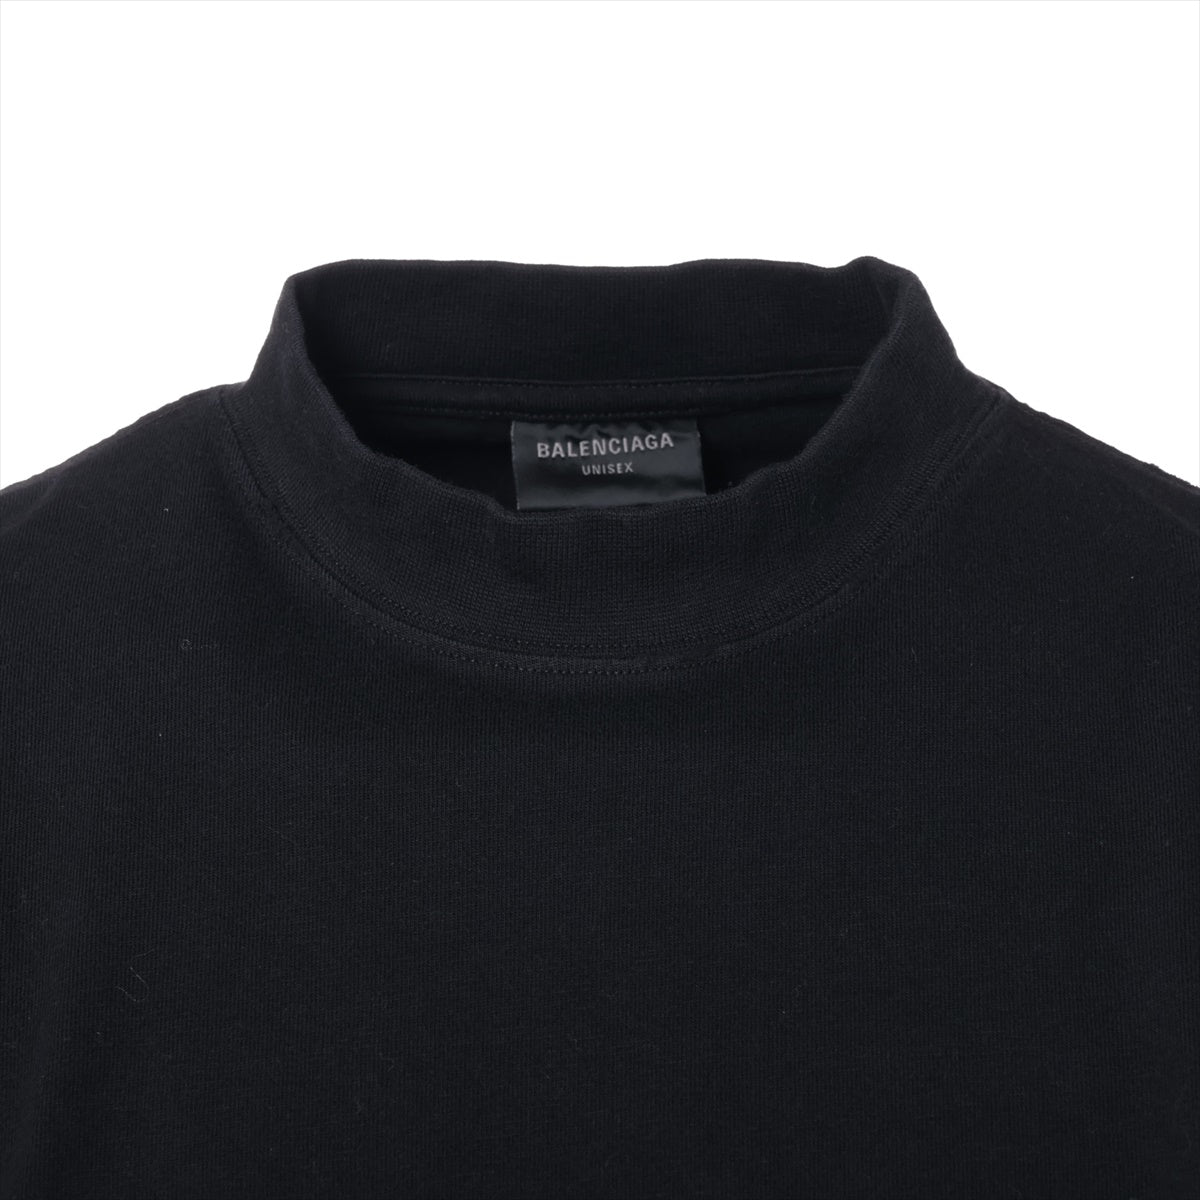 バレンシアガ 23年 コットン×ポリウレタン Tシャツ 2 ユニセックス ブラック  739028 ダメージ加工